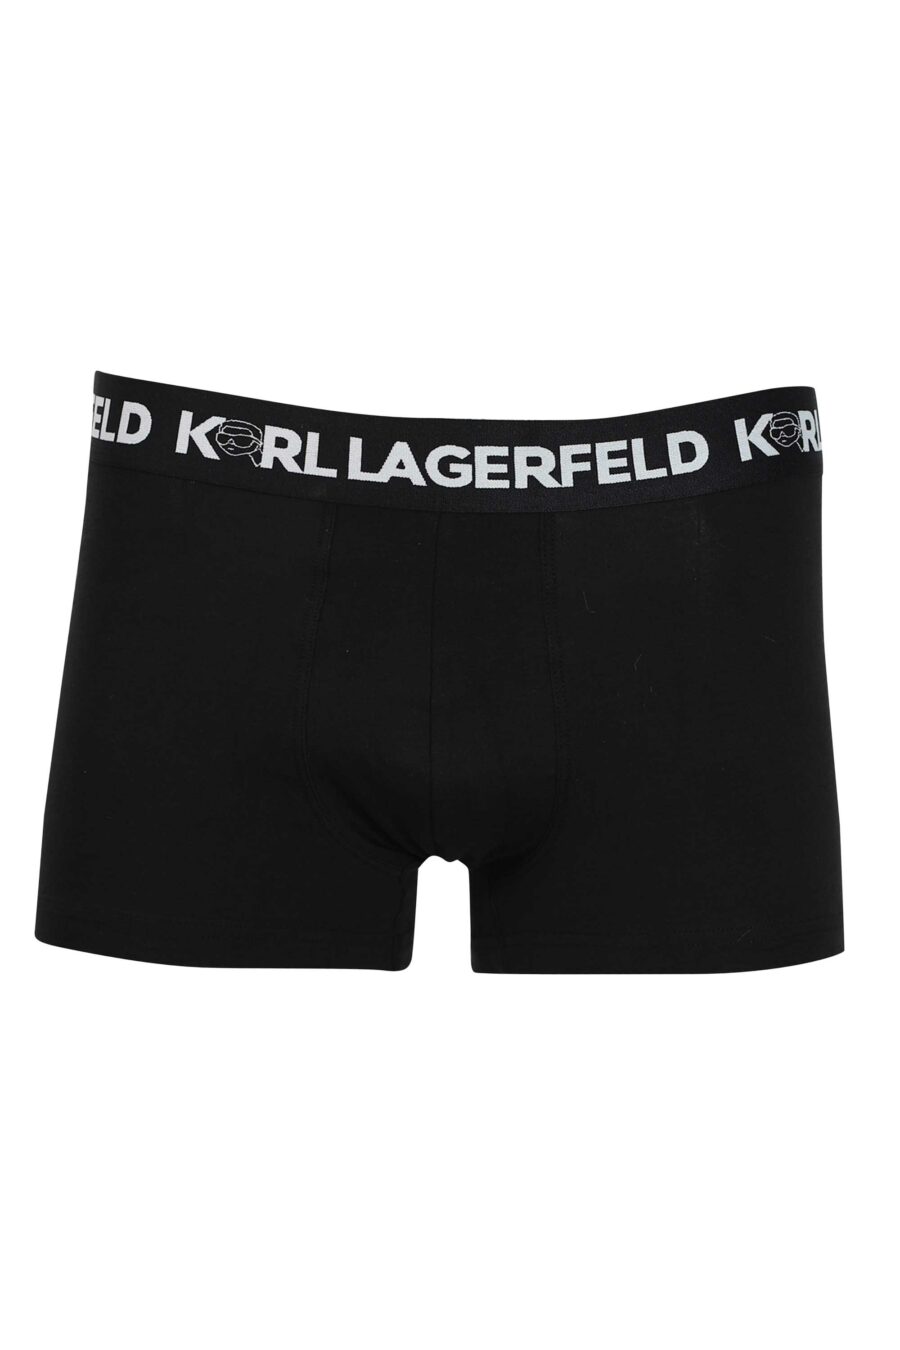 Pack de tres boxers negros con estampados diferentes "karl" - 8720744054580